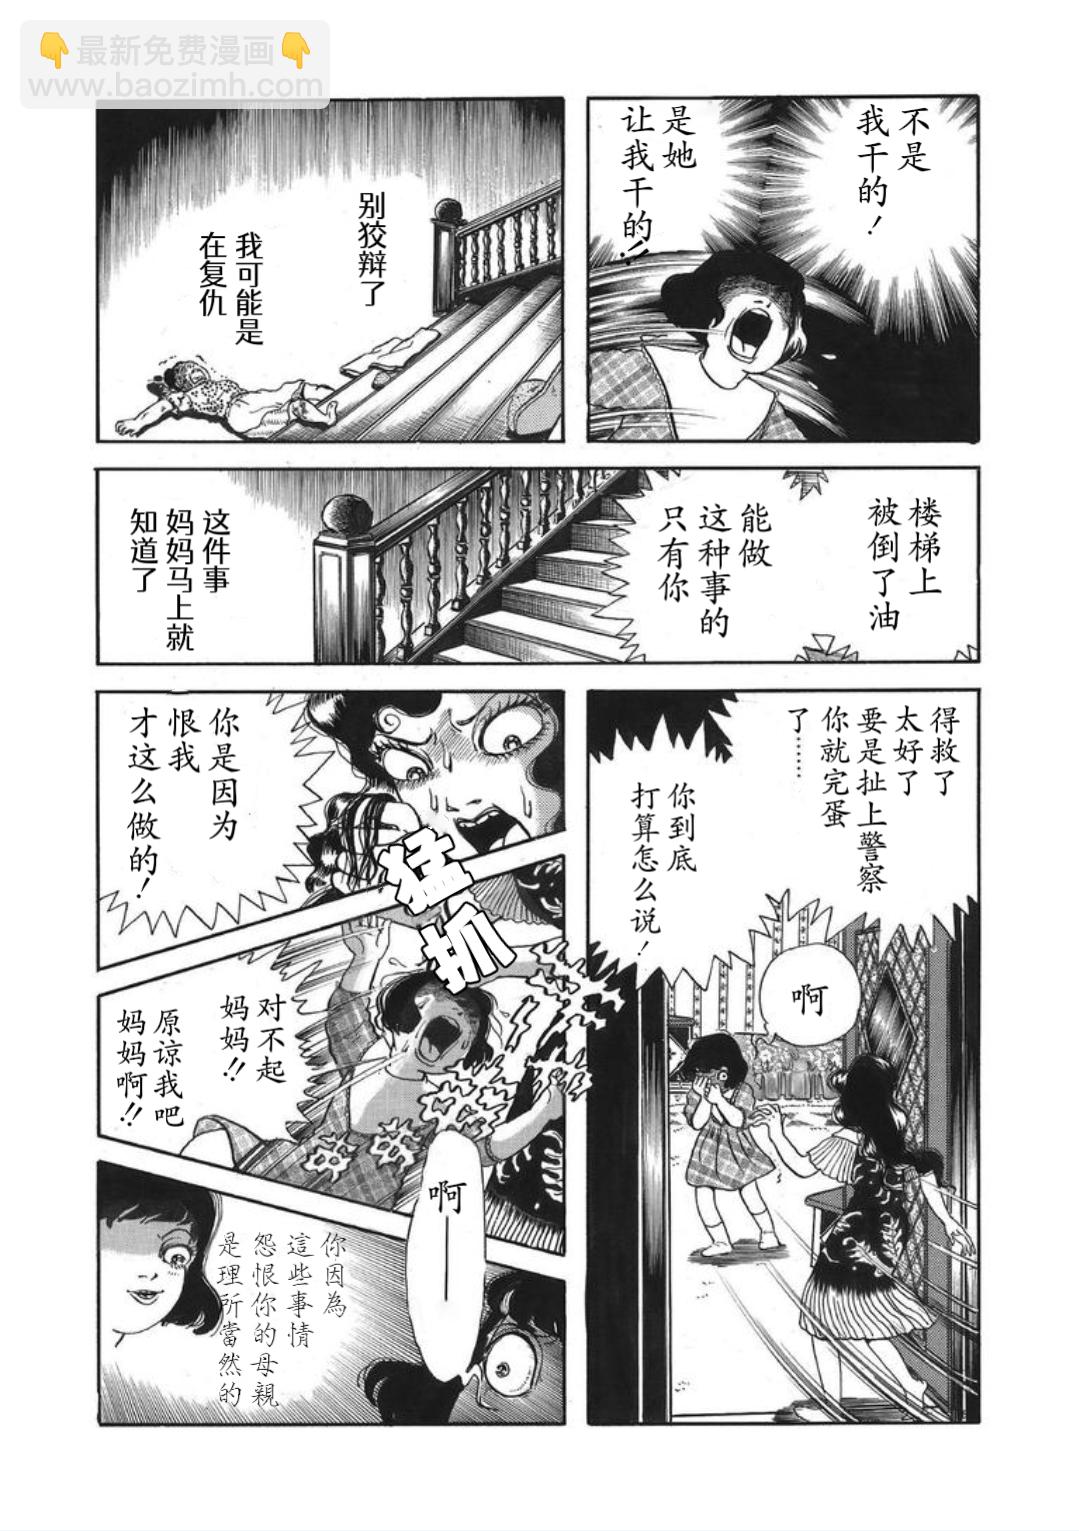 犬木加奈子的大人向恐怖童話 - 皇后的魔鏡 - 1